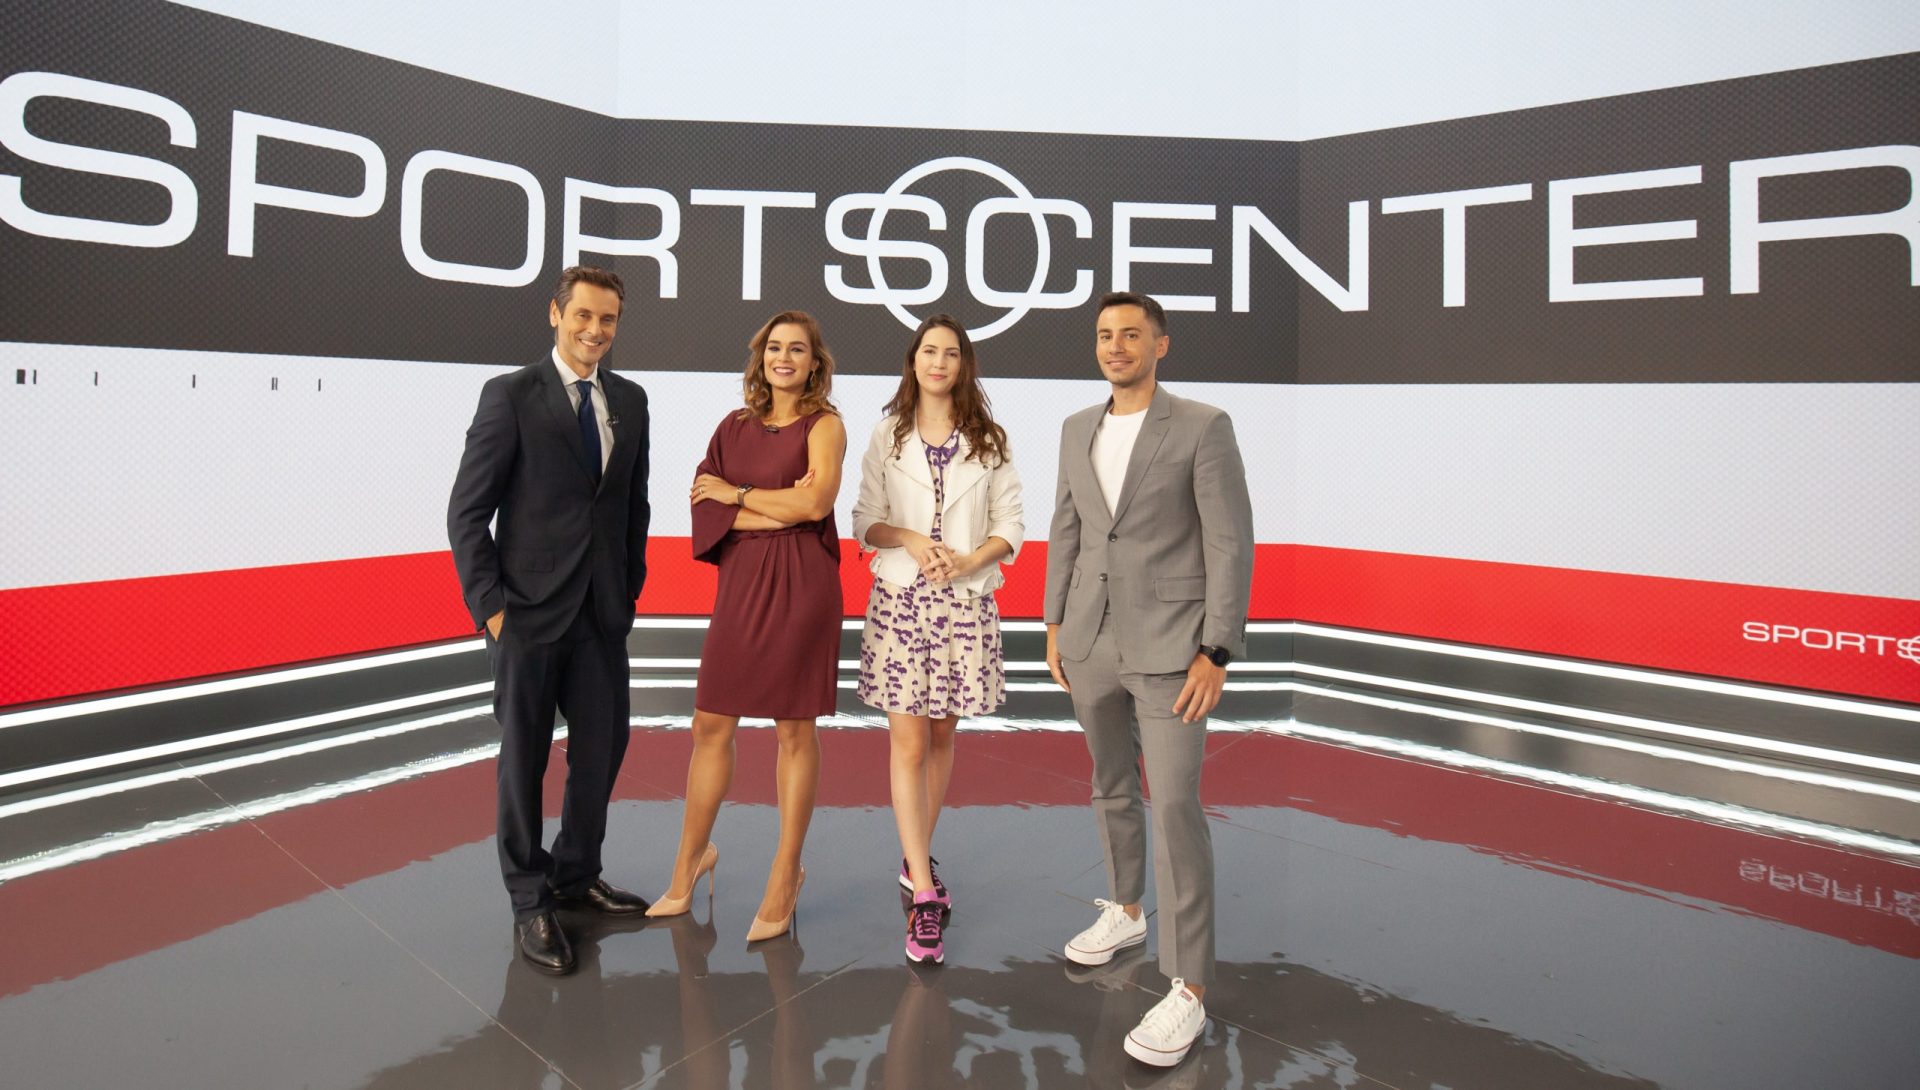 Rival do SporTV, ESPN atinge alta audiência com futebol europeu e programas ao vivo